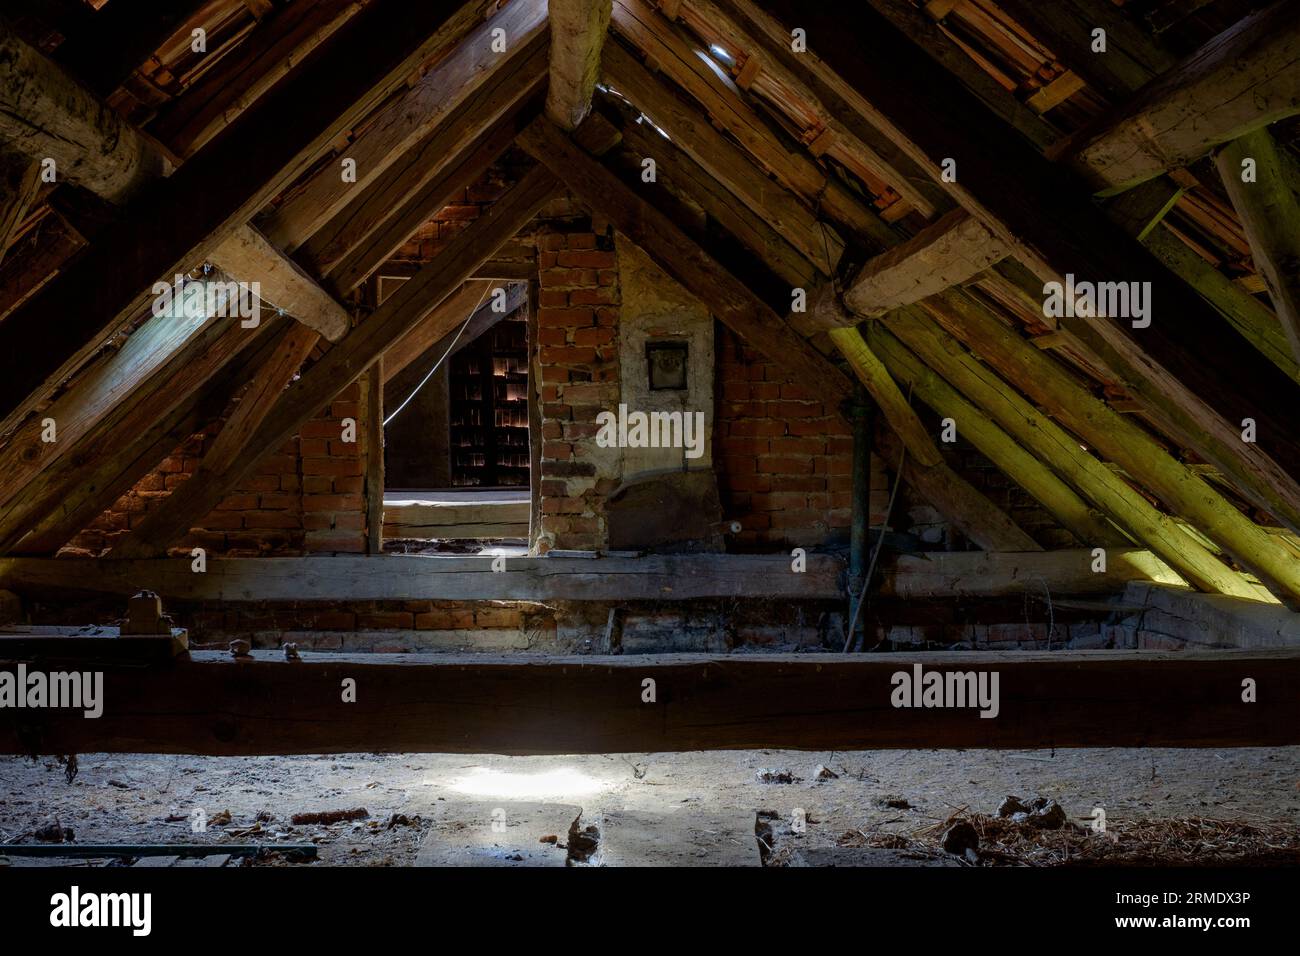 grenier loft typique des années 1950 construit maison rurale hongroise avec poutres en bois toit en tuiles Banque D'Images